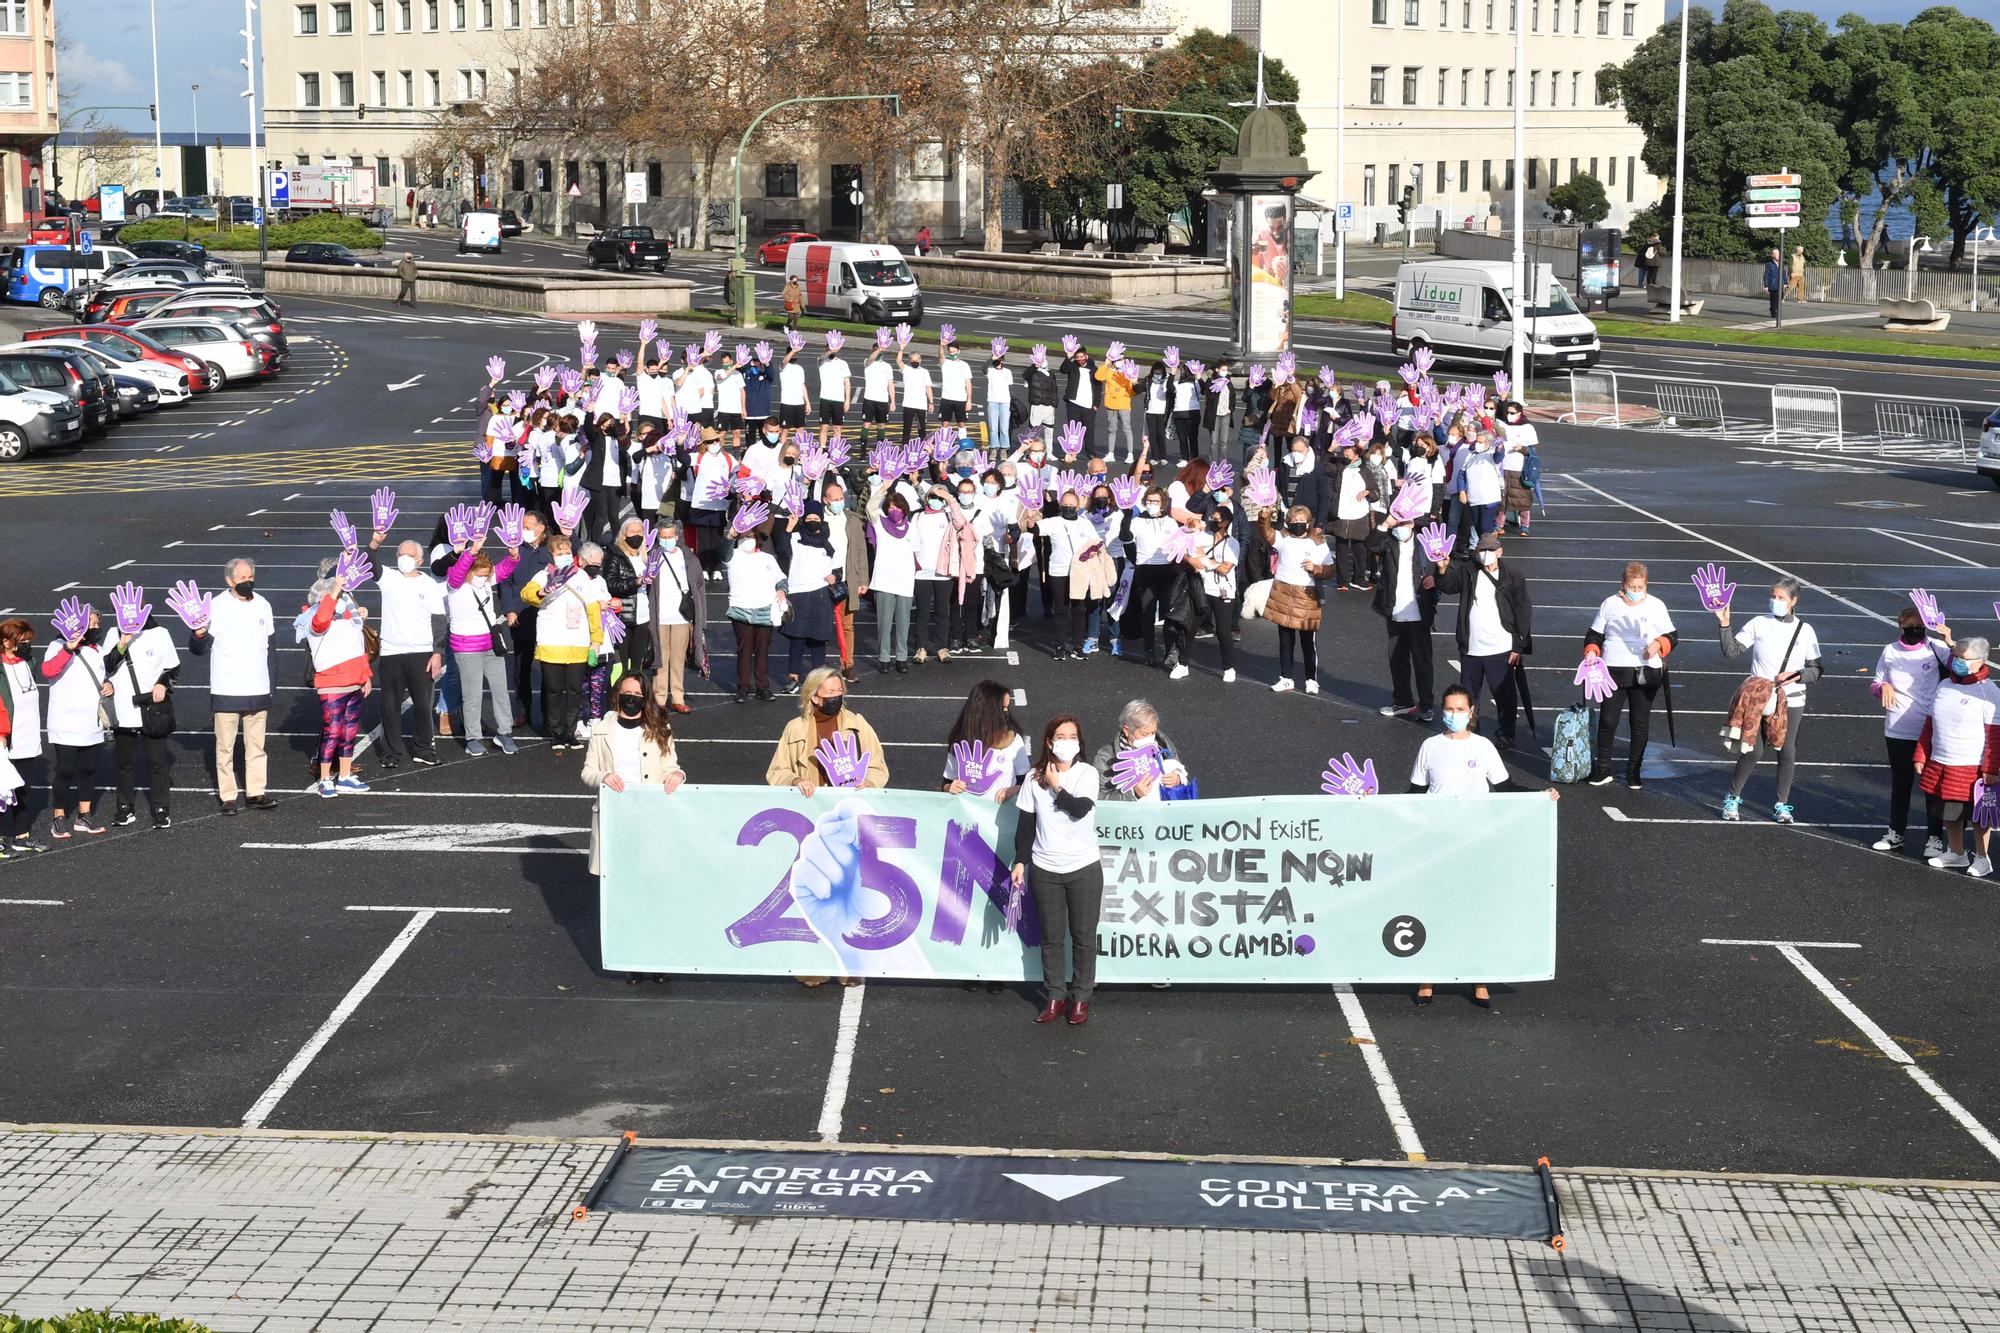 25-N en A Coruña | O deporte di "non" á violencia sobre as mulleres